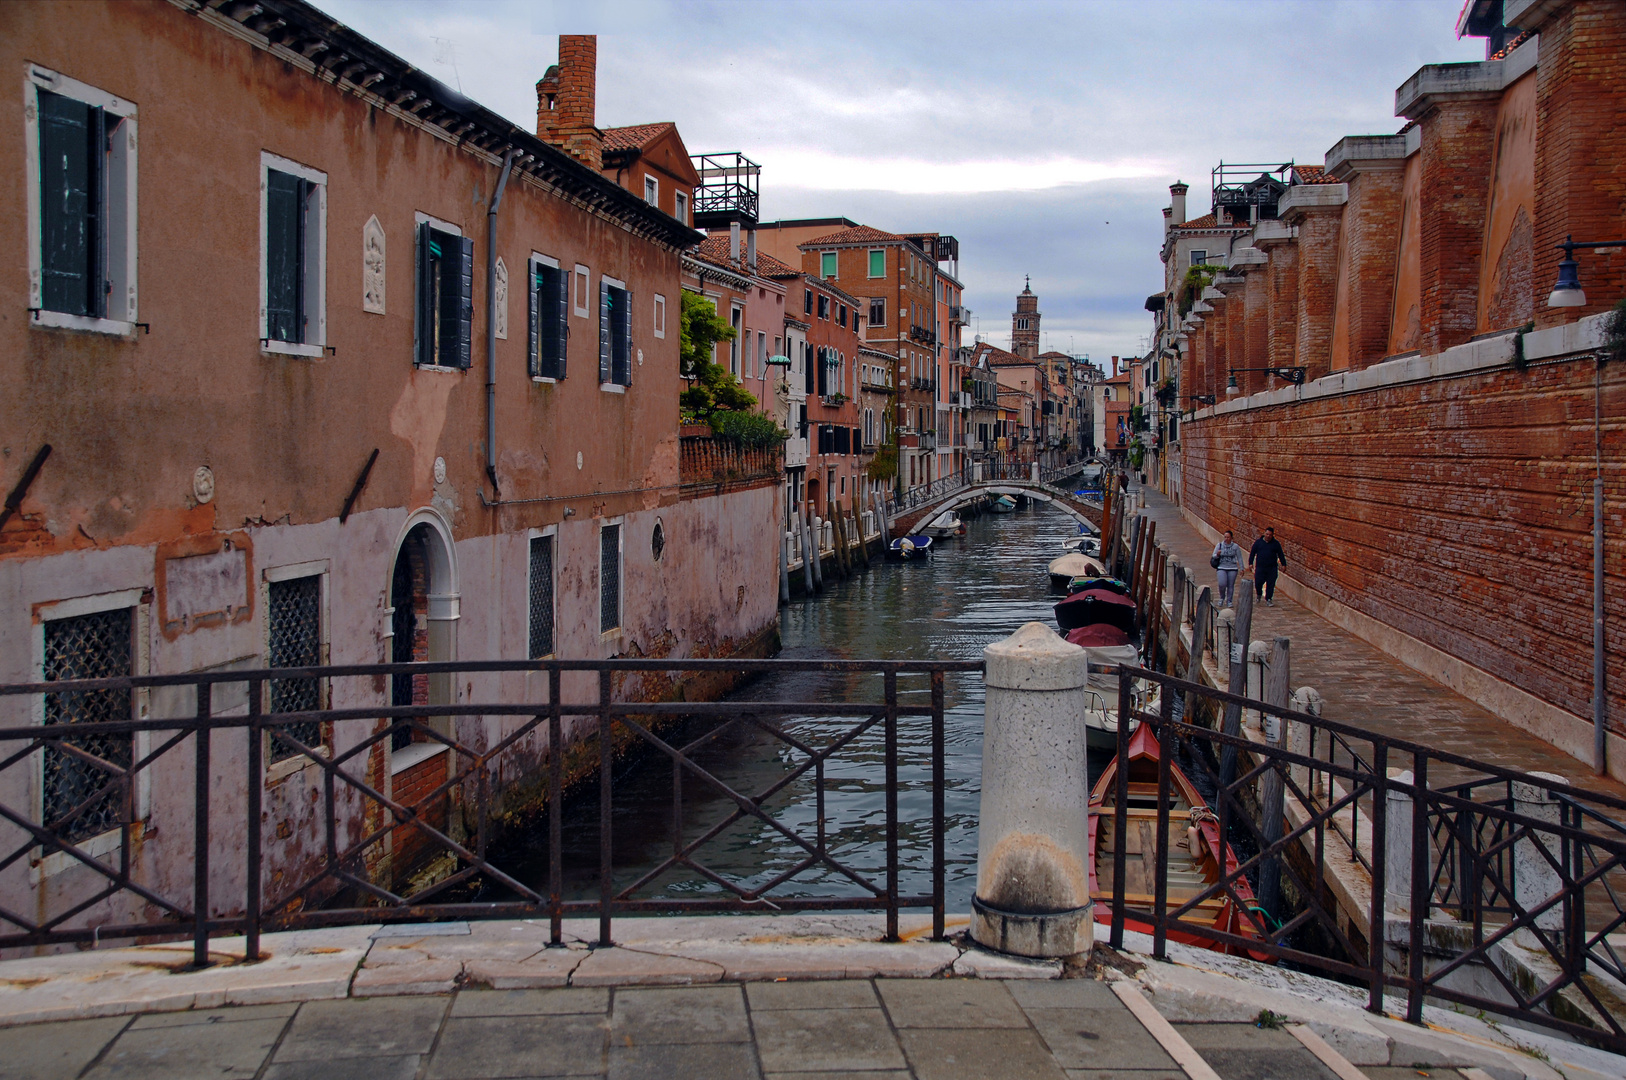  Venedig, auch die Seitenkanäle haben ihren Reiz